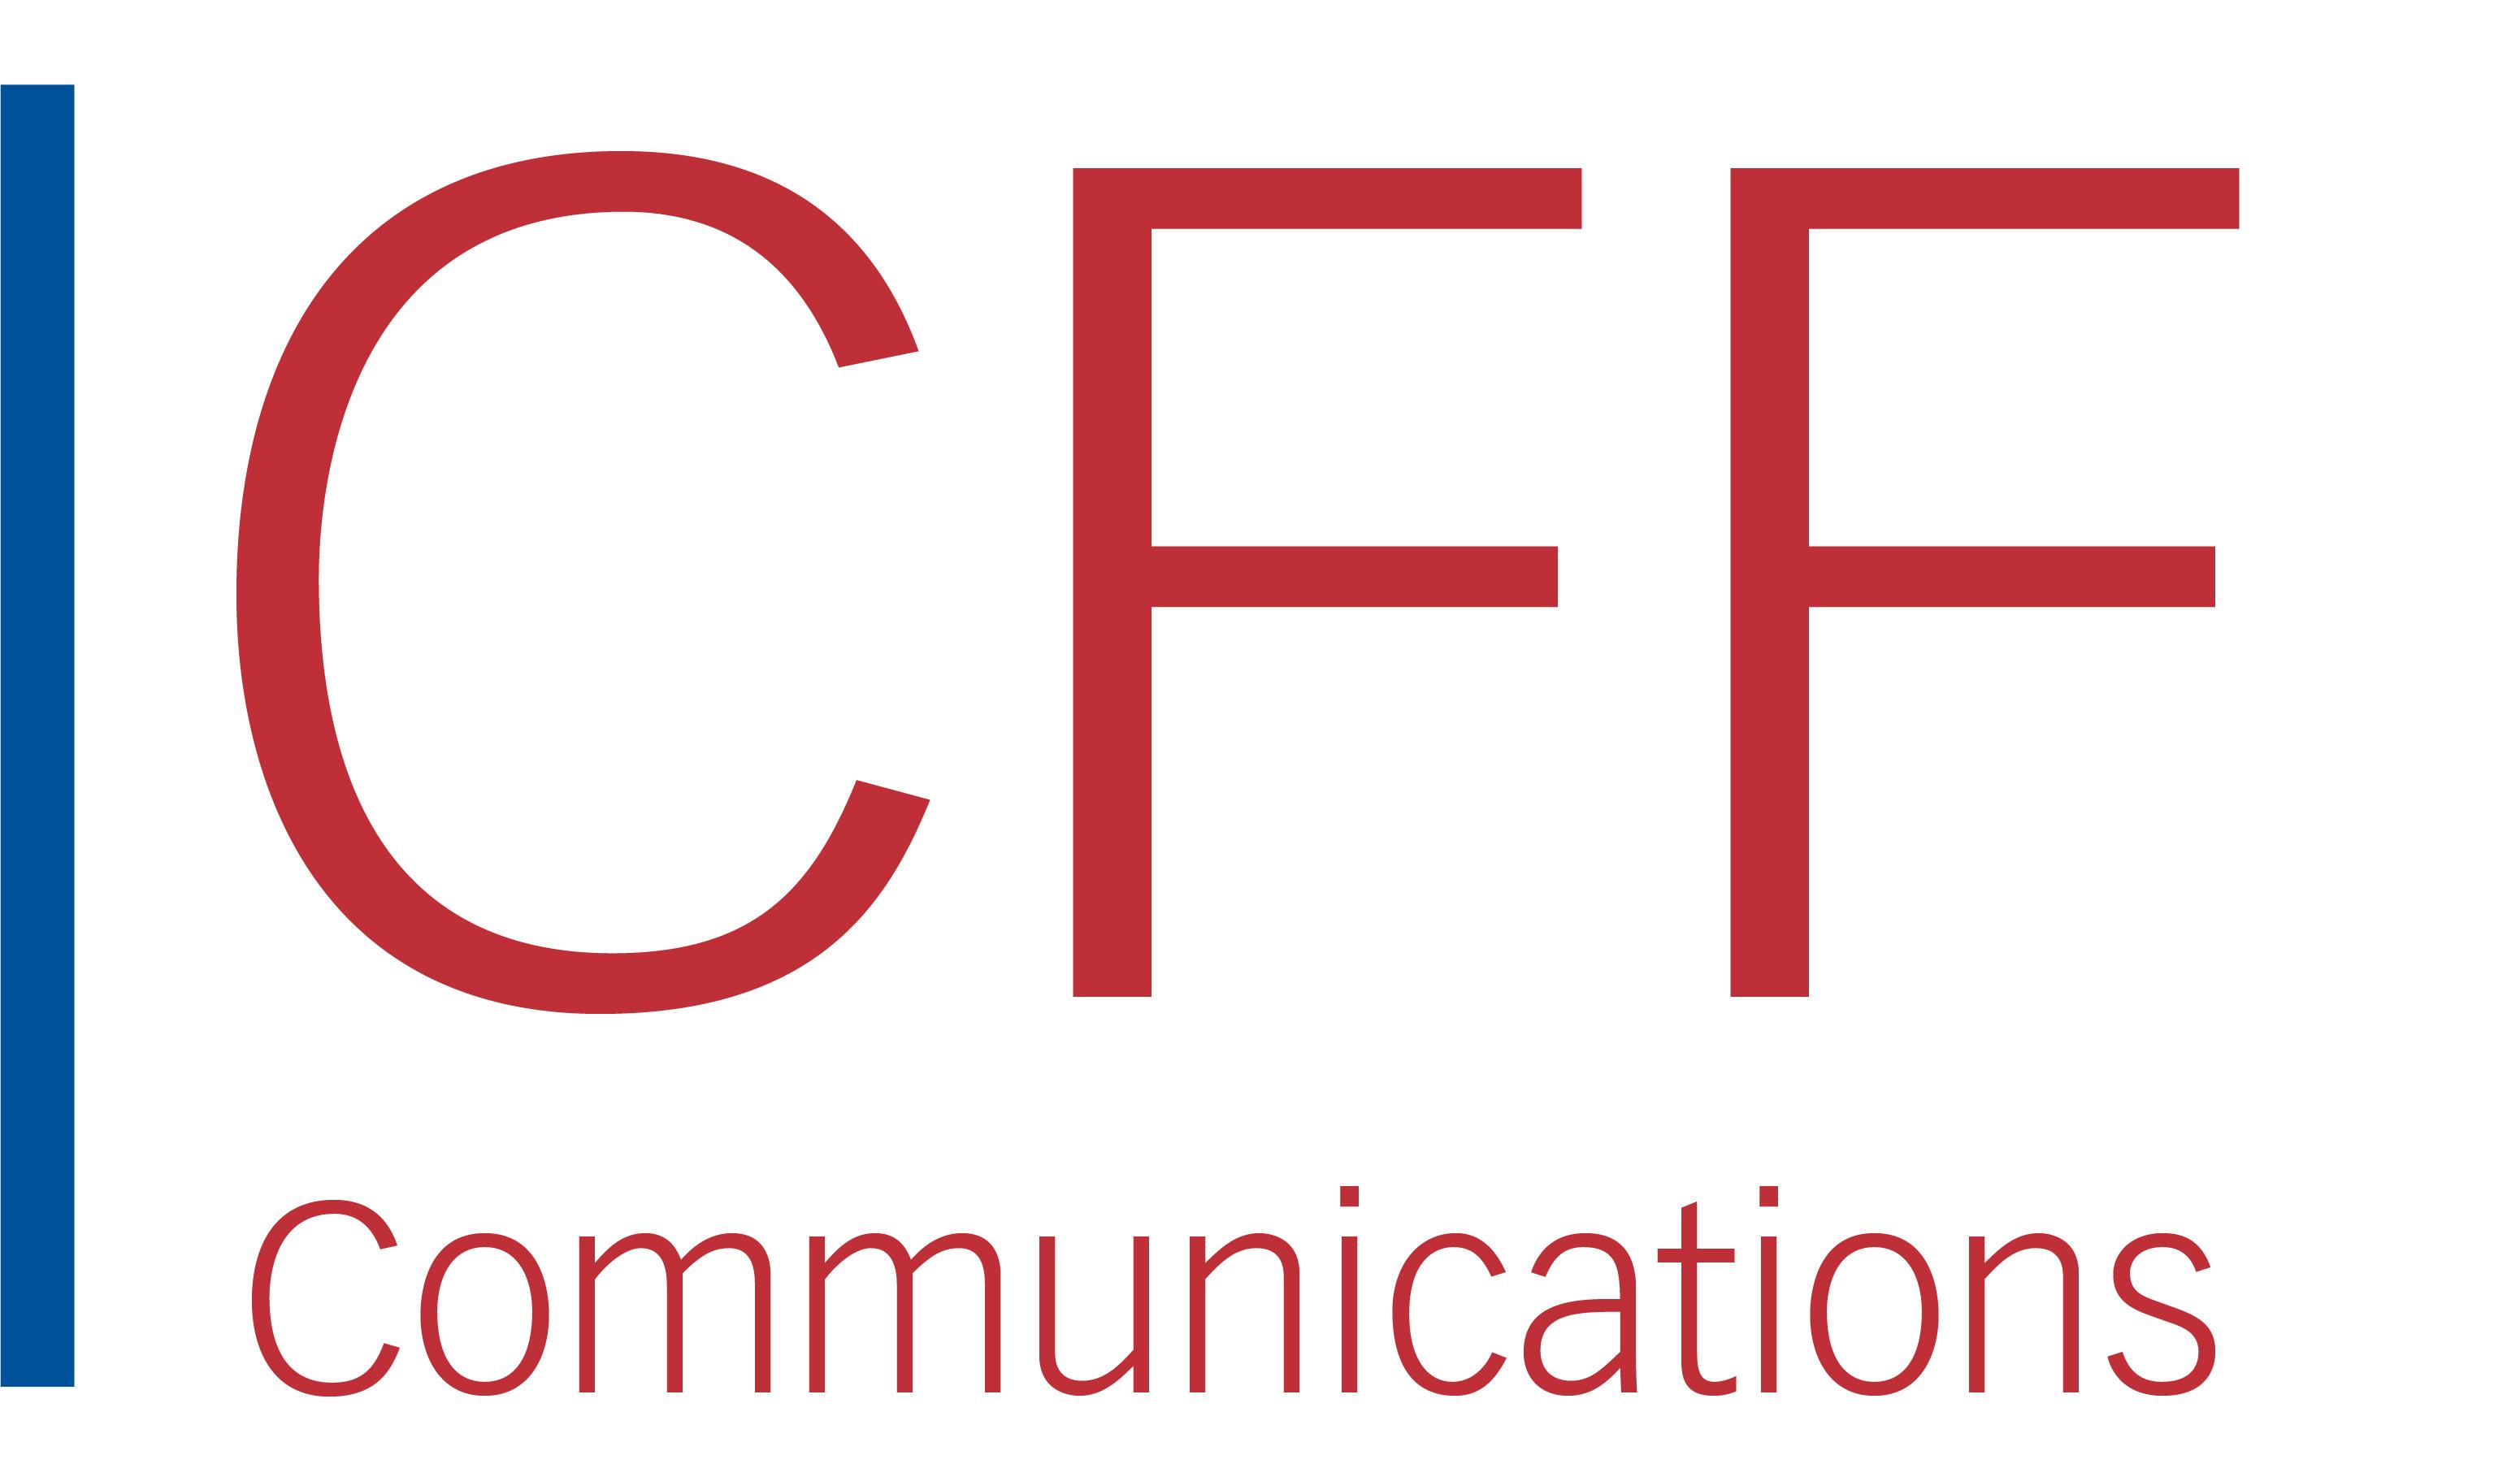 CCF Communications logo